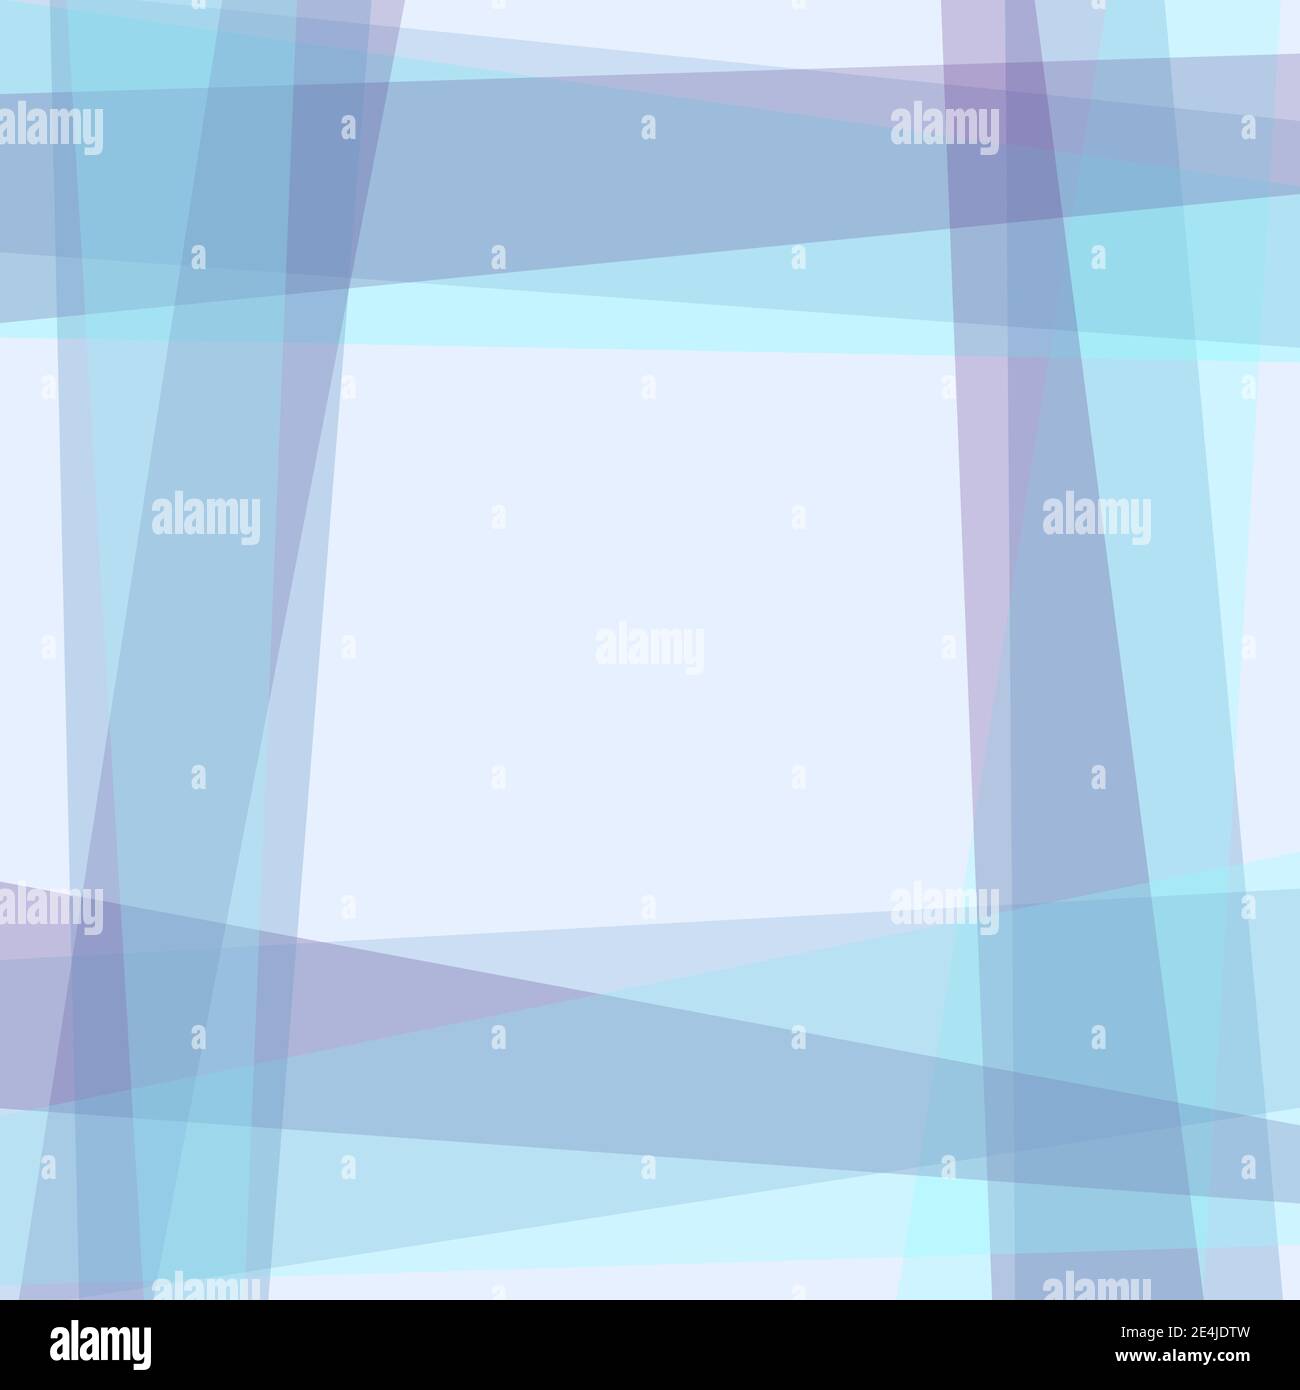 Transparenter geometrischer Rahmen auf hellem Hintergrund. Violette, blaue Streifen. Quadratischer Kopierbereich. Vektor-abstrakte Vorlage für Mockup, Flyer, Broschüre. EPS10 Stock Vektor